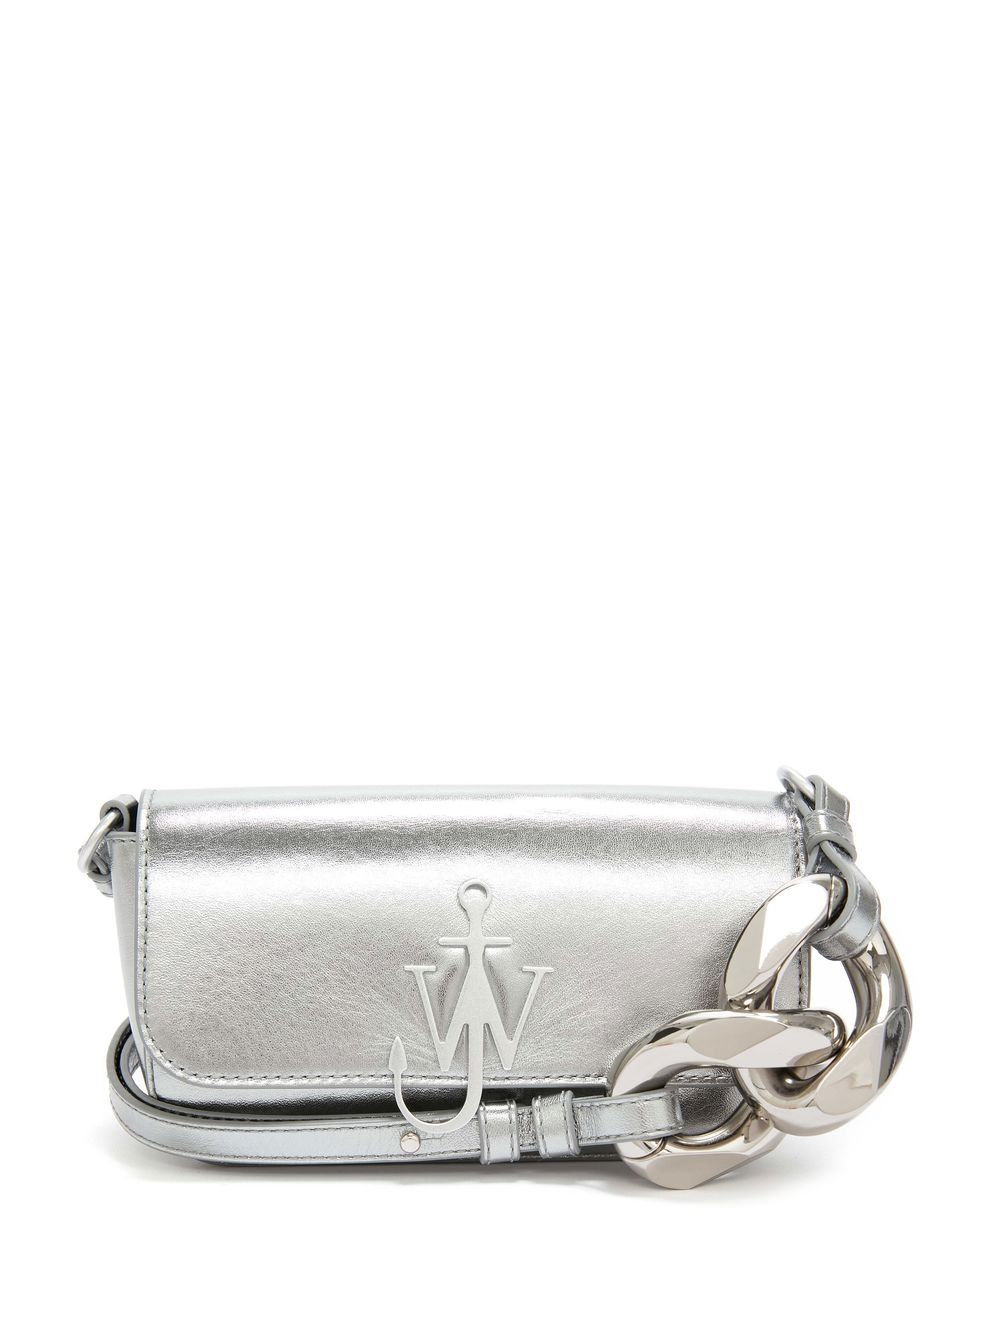 JW Anderson Chain Anchor crossbody bag - Silver